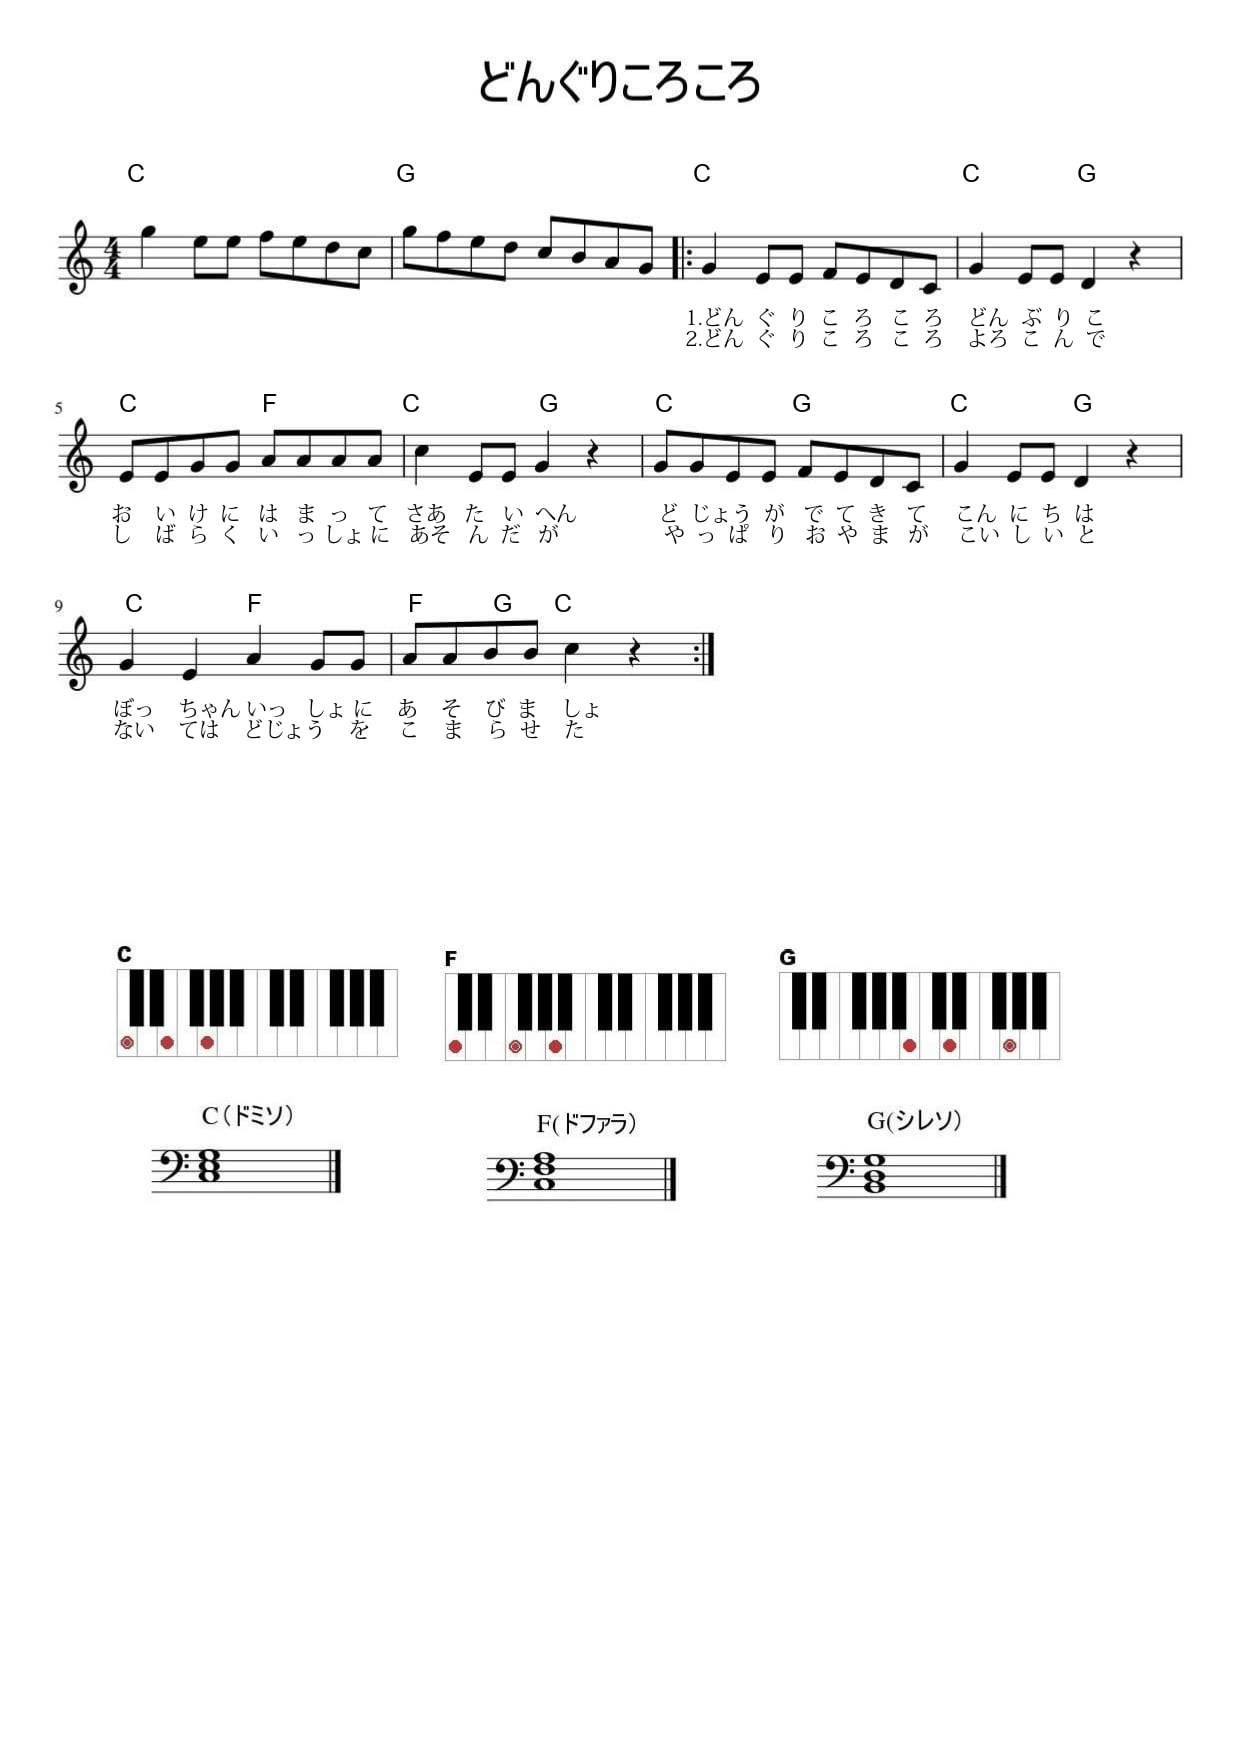 保育士試験課題曲「どんぐりころころ」のピアノ譜、プレゼント 